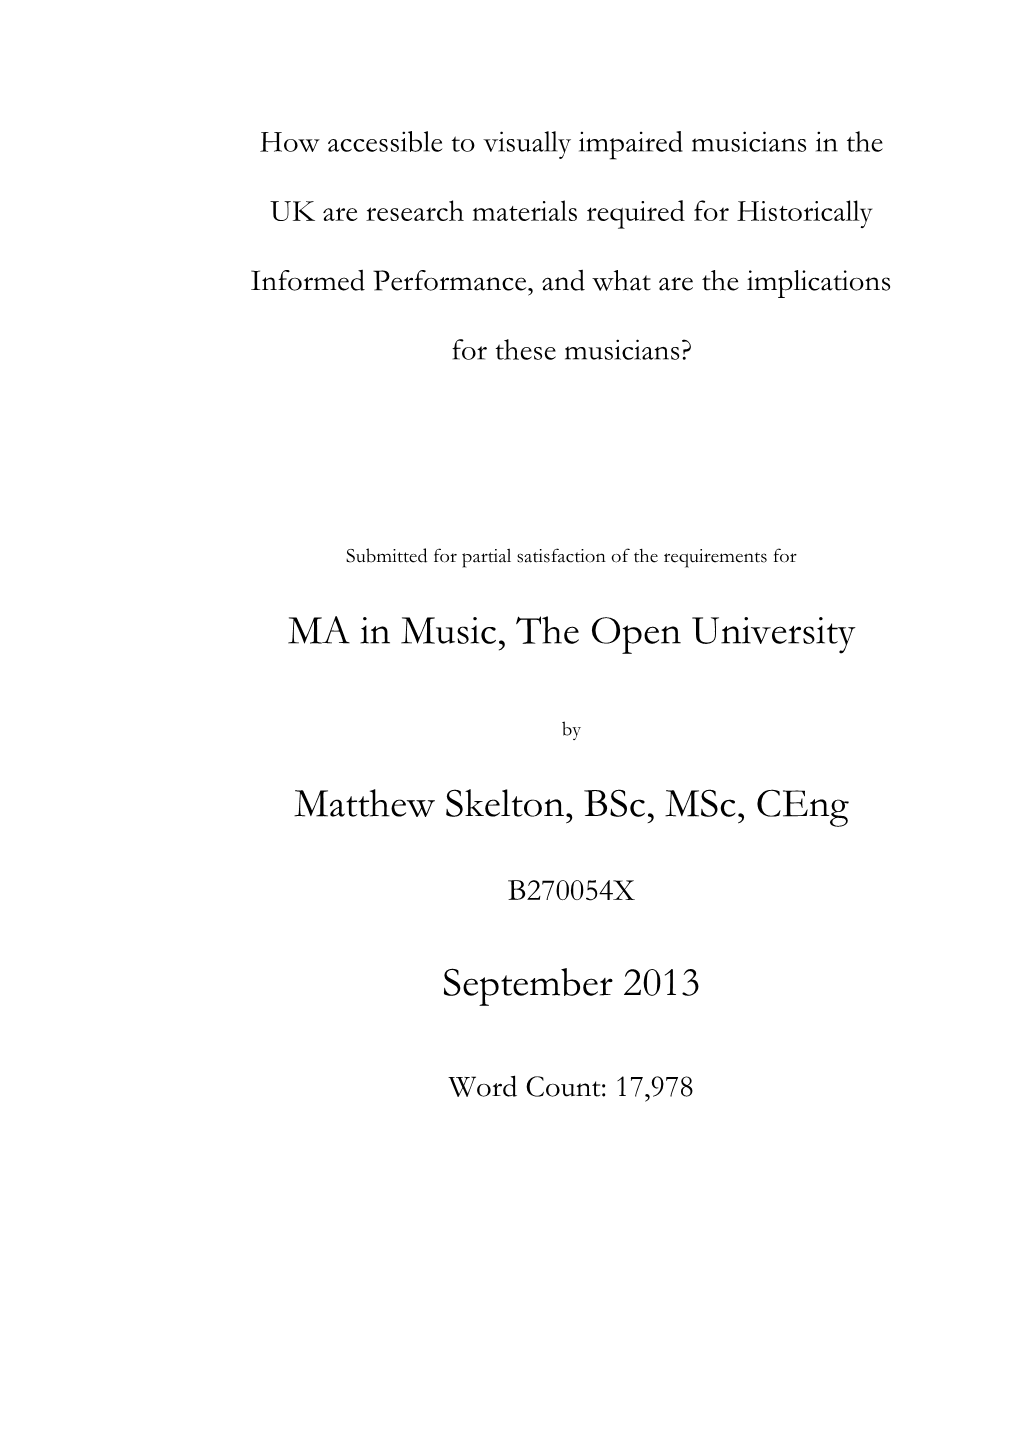 MA in Music, the Open University Matthew Skelton, Bsc, Msc, Ceng